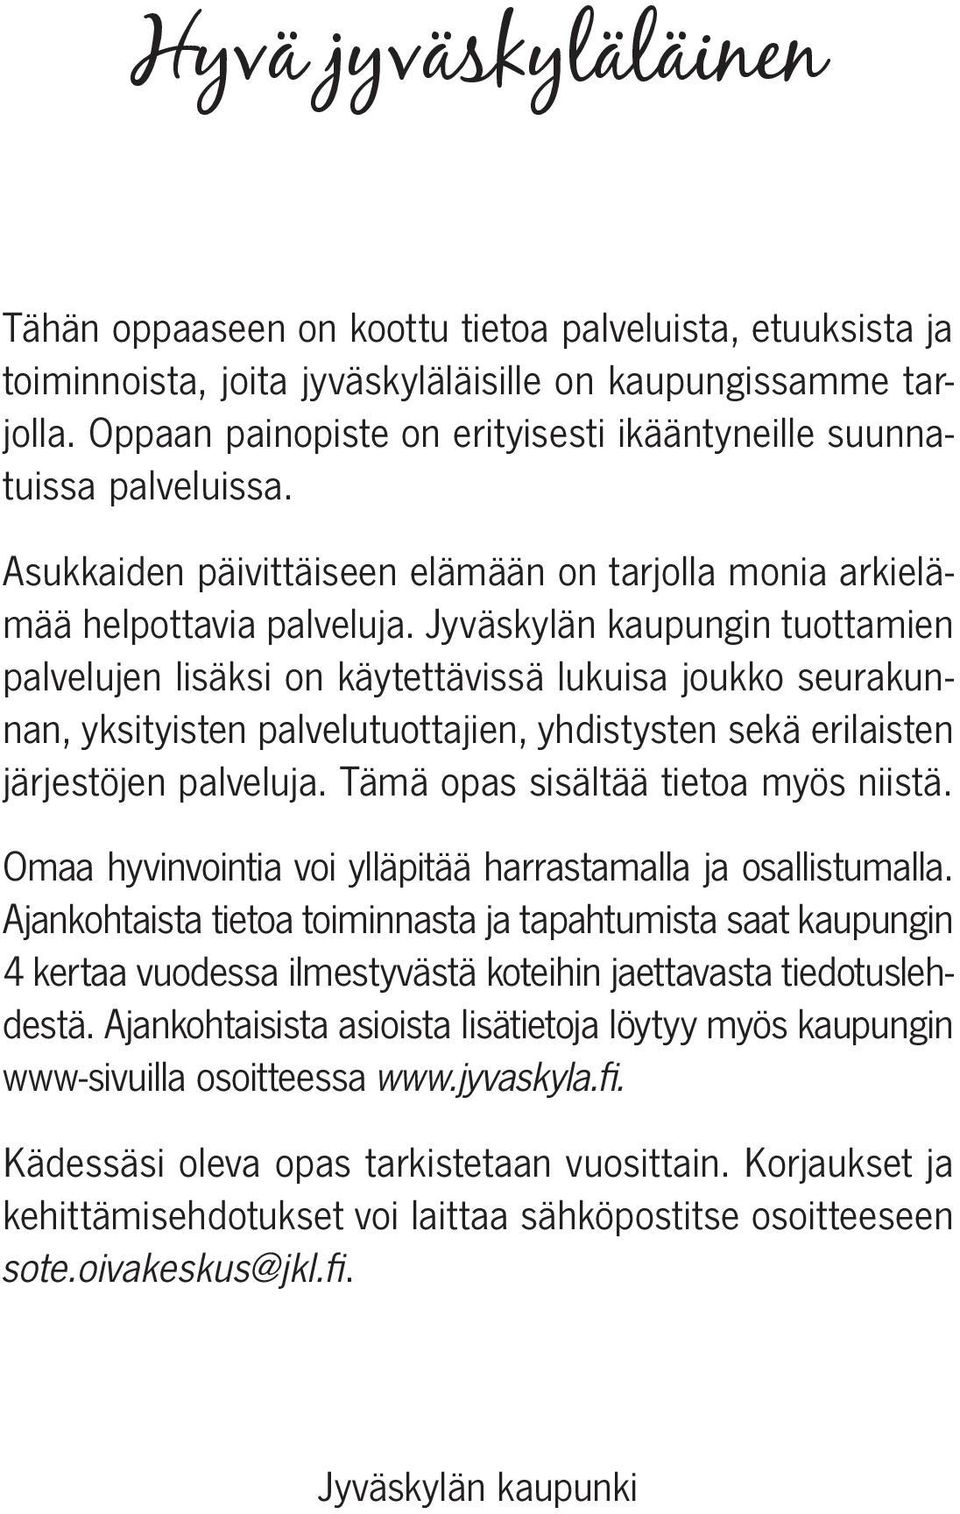 Jyväskylän kaupungin tuottamien palvelujen lisäksi on käytettävissä lukuisa joukko seurakunnan, yksityisten palvelutuottajien, yhdistysten sekä erilaisten järjestöjen palveluja.